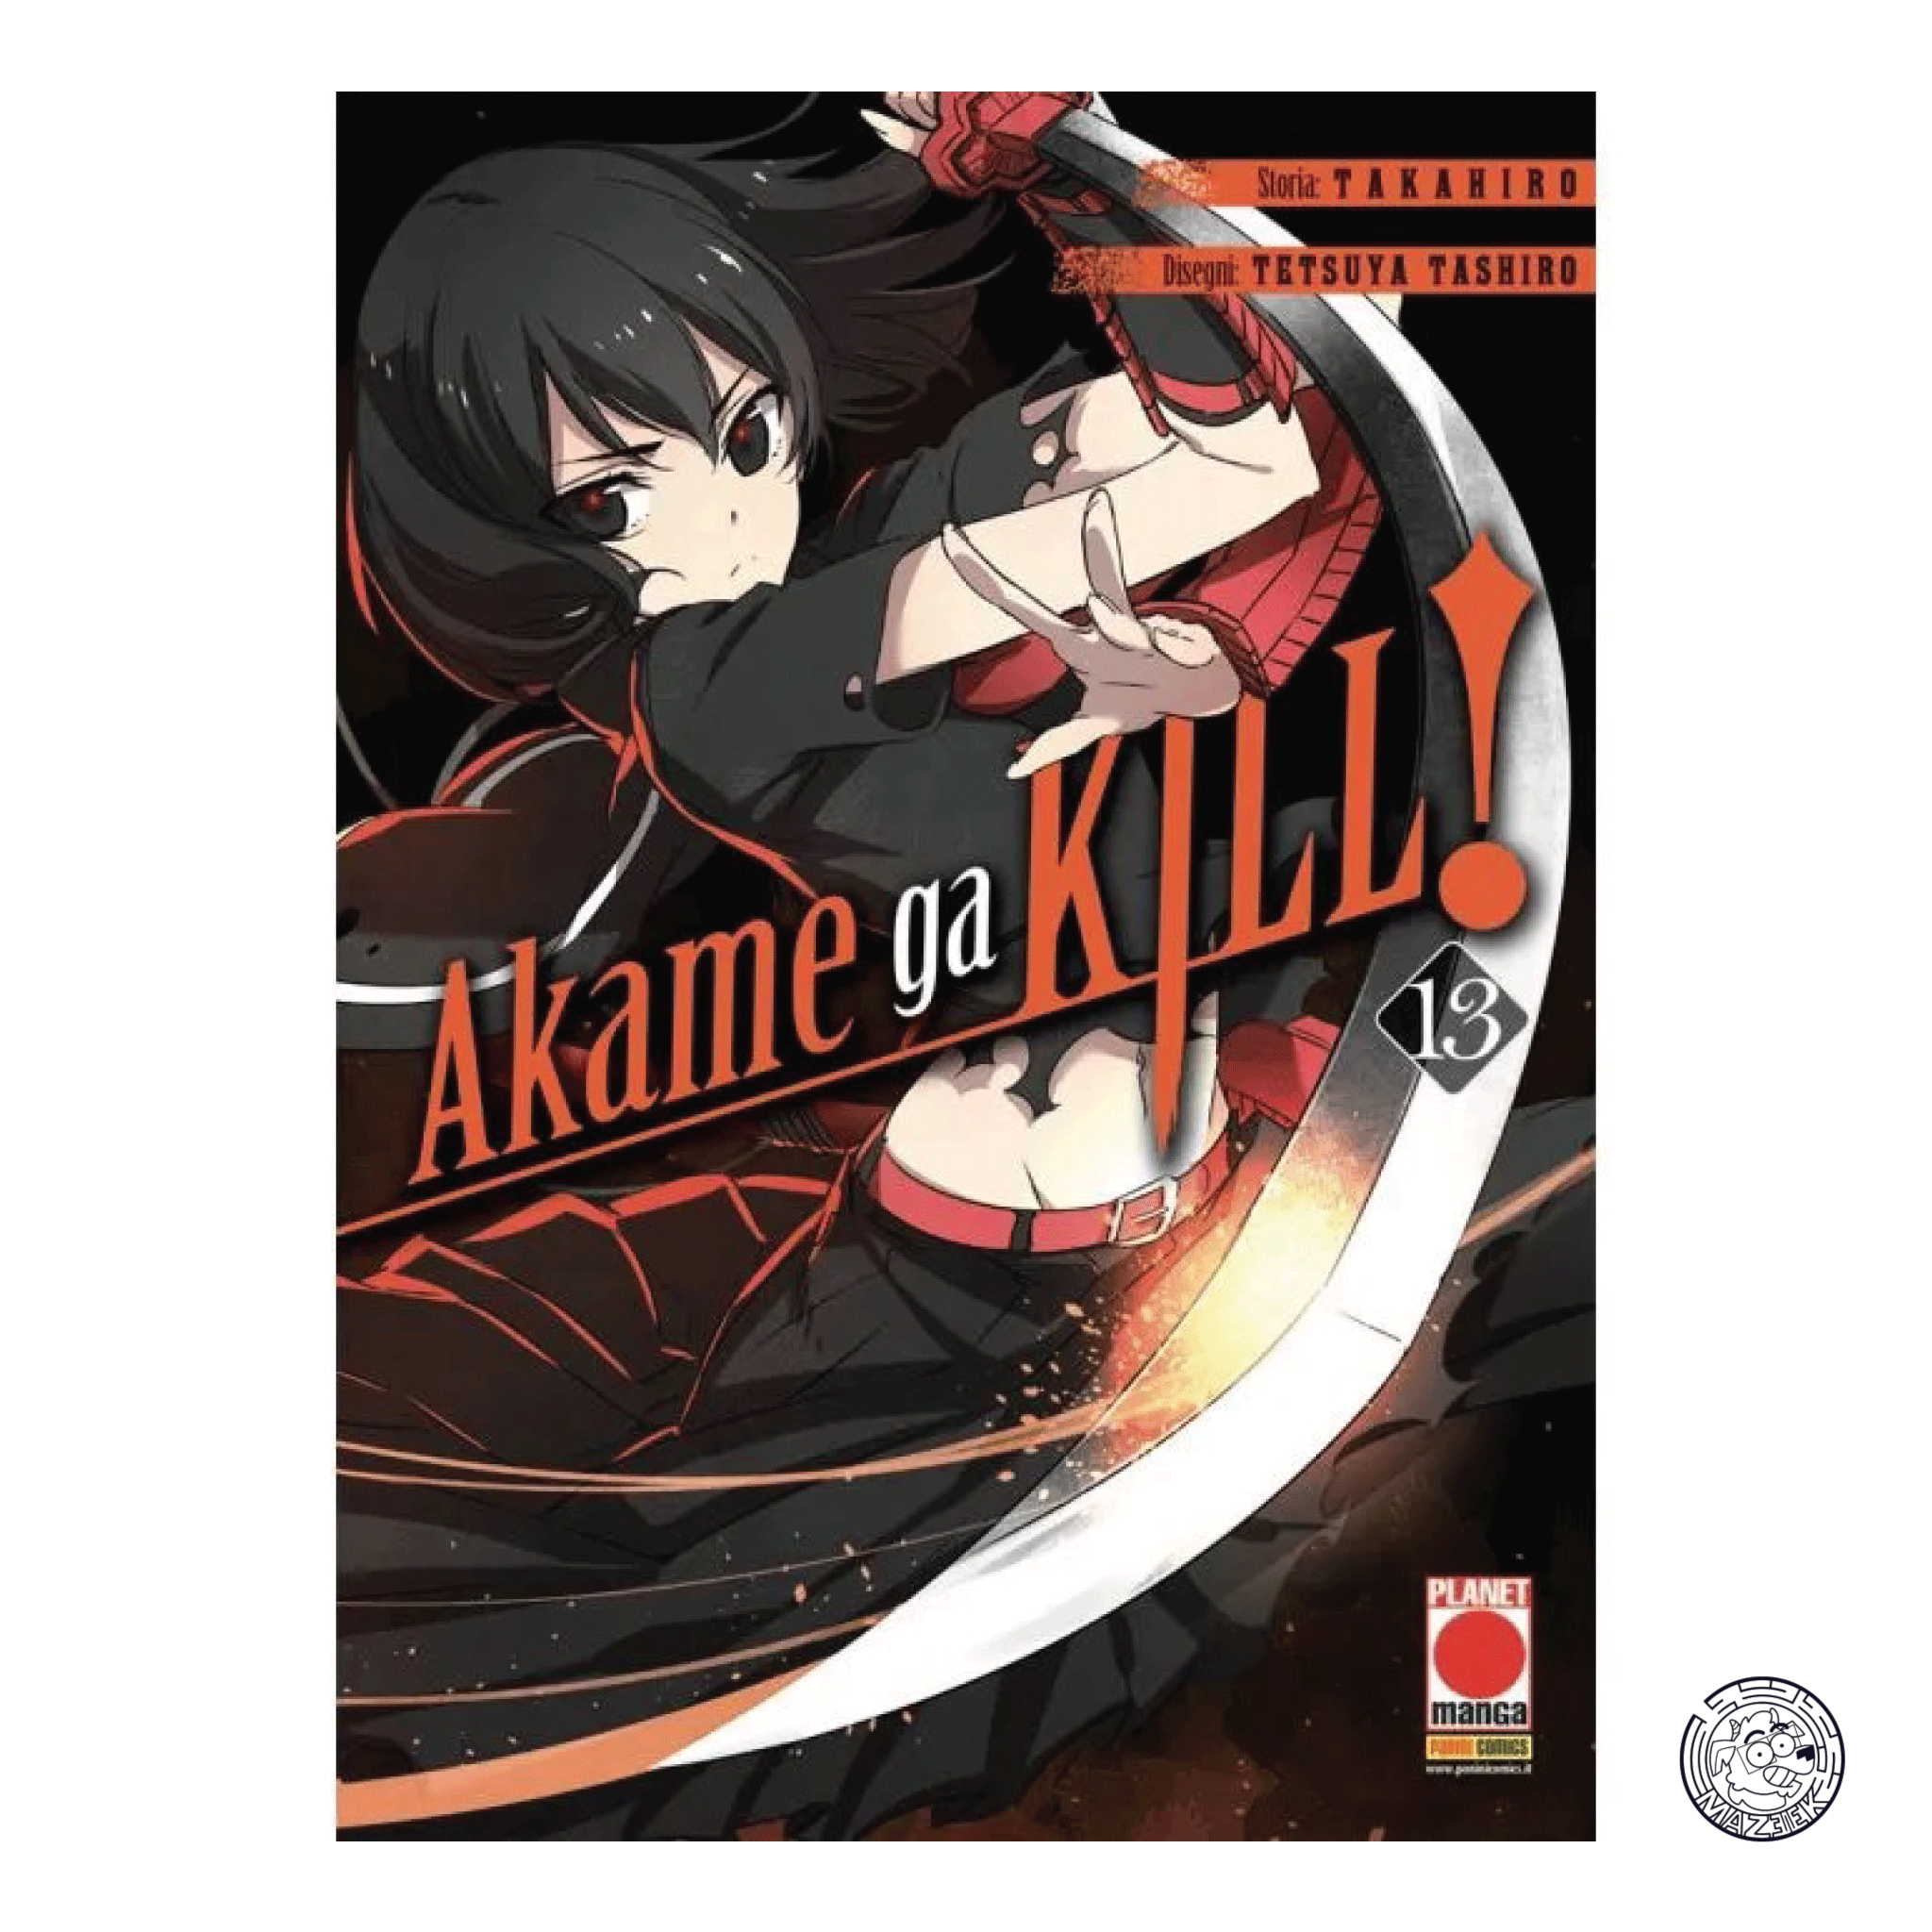 Akame Ga Kill! 13 - First Printing